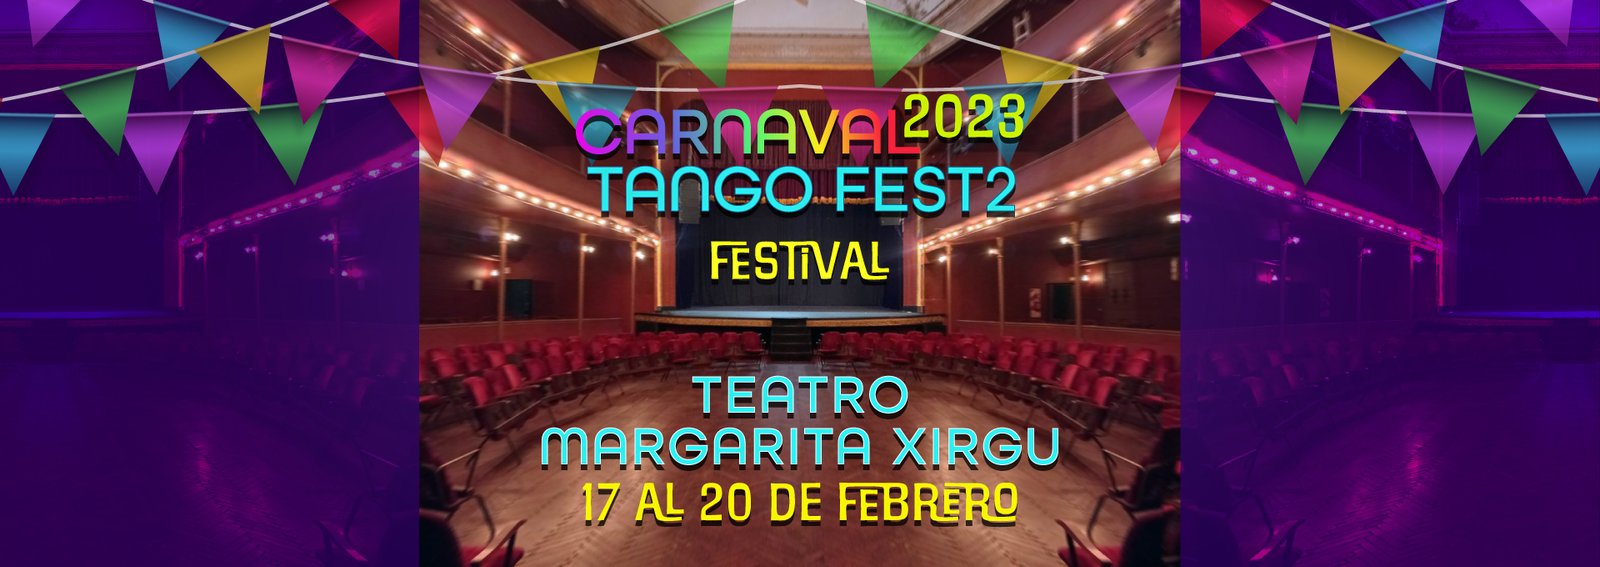 Carnaval Tango Fest2 Festival